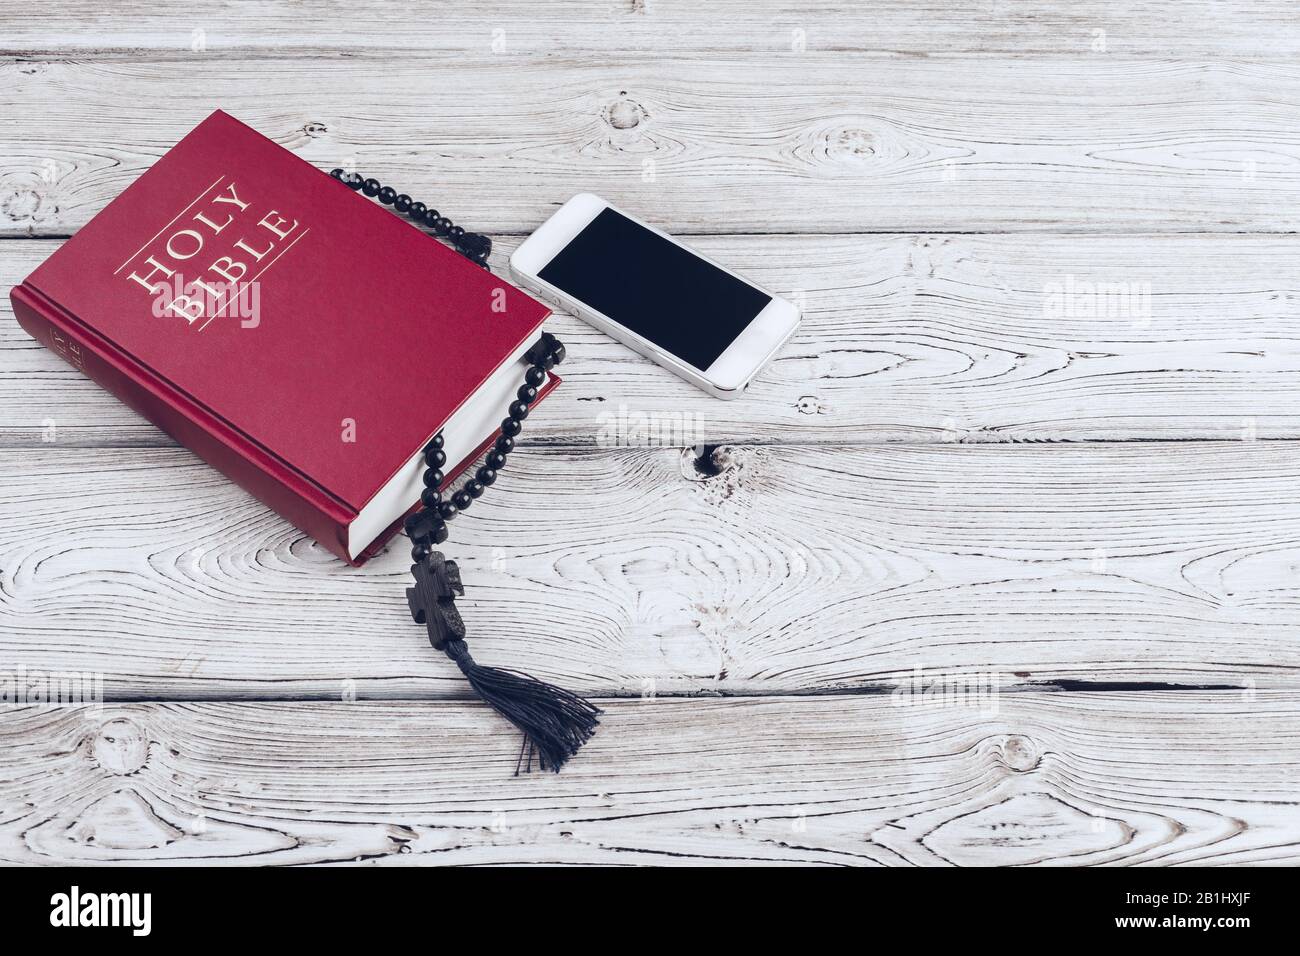 Bible Sainte et smartphone avec tasse de café noire sur fond en bois. Banque D'Images